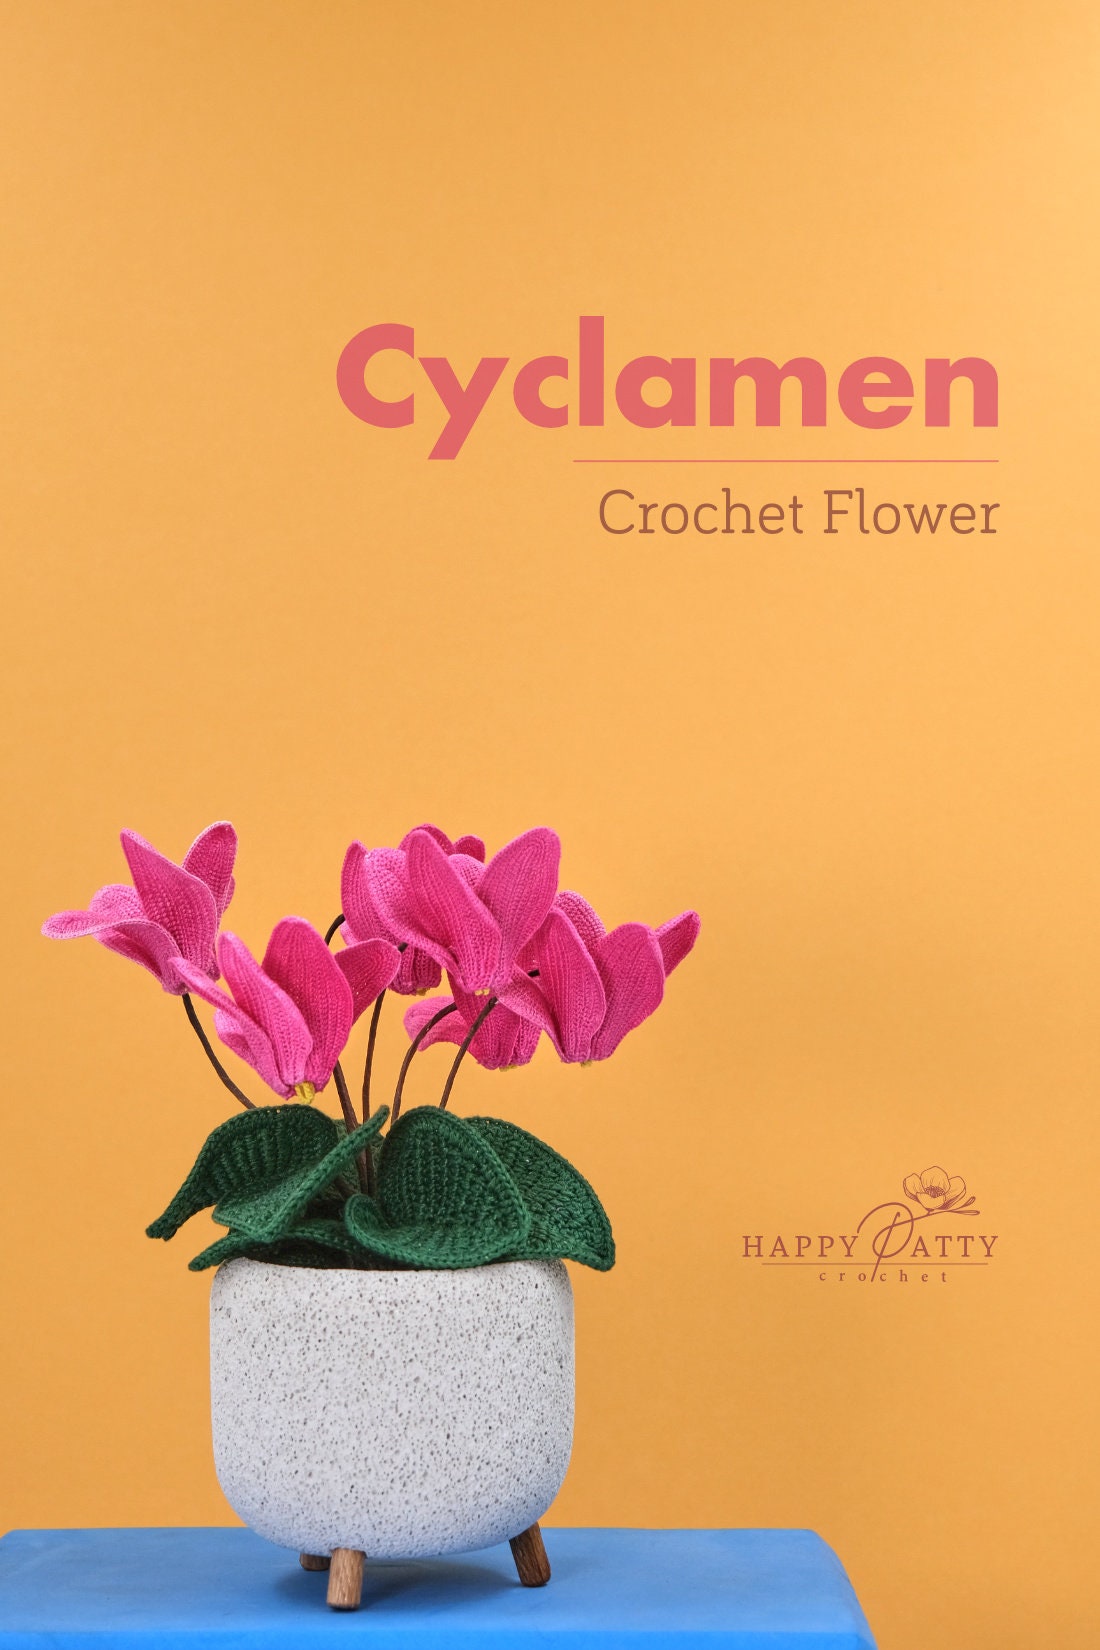 Crochet Cyclamen Flower Pattern - Crochet Pattern for Cyclamen Flower